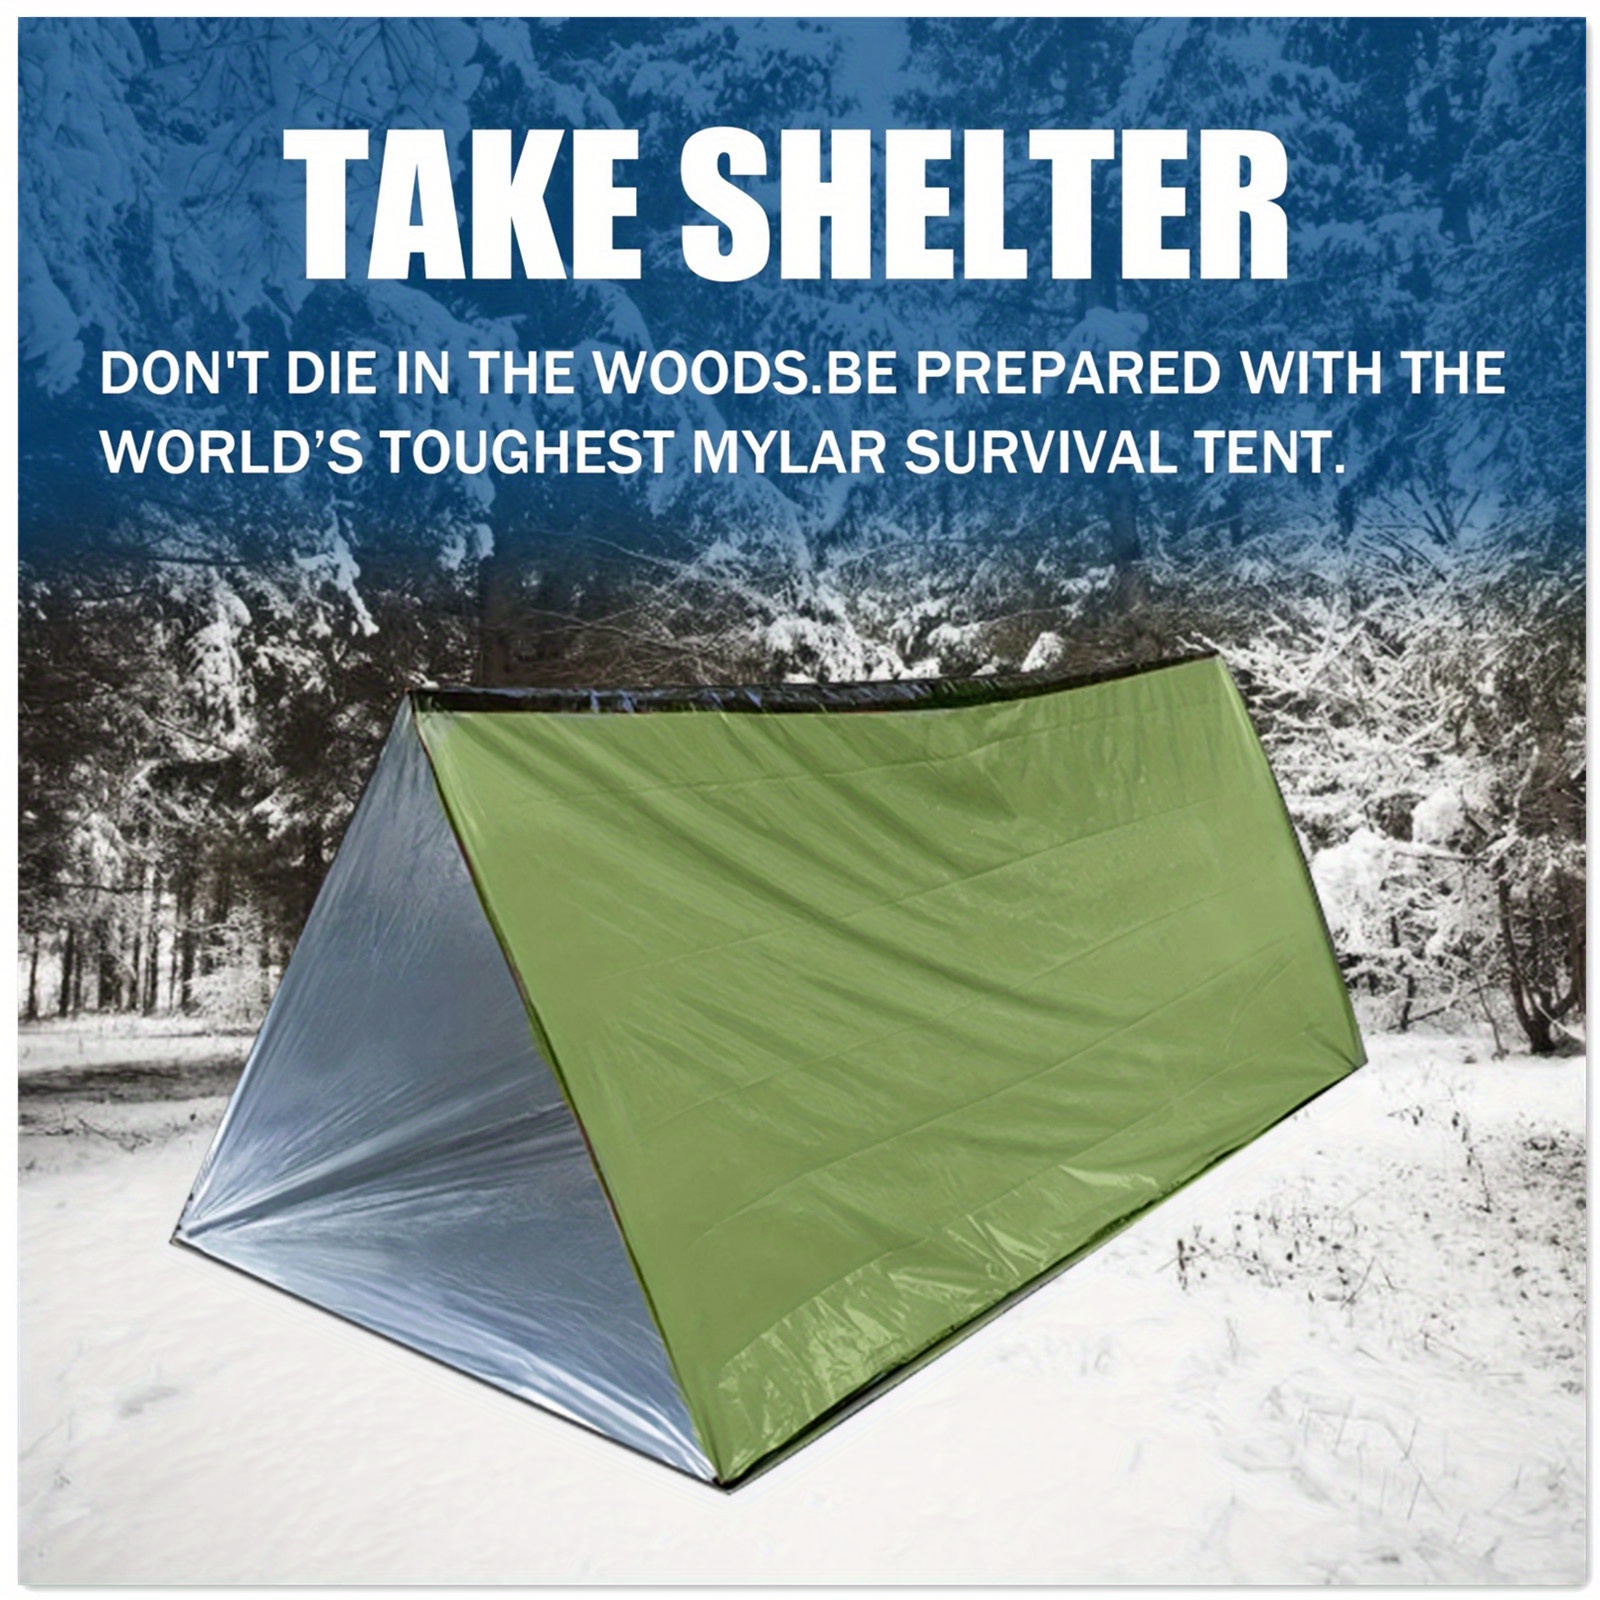 Hai bisogno di una tenda rifugio? Preparati per il maltempo con CheapOutdoor